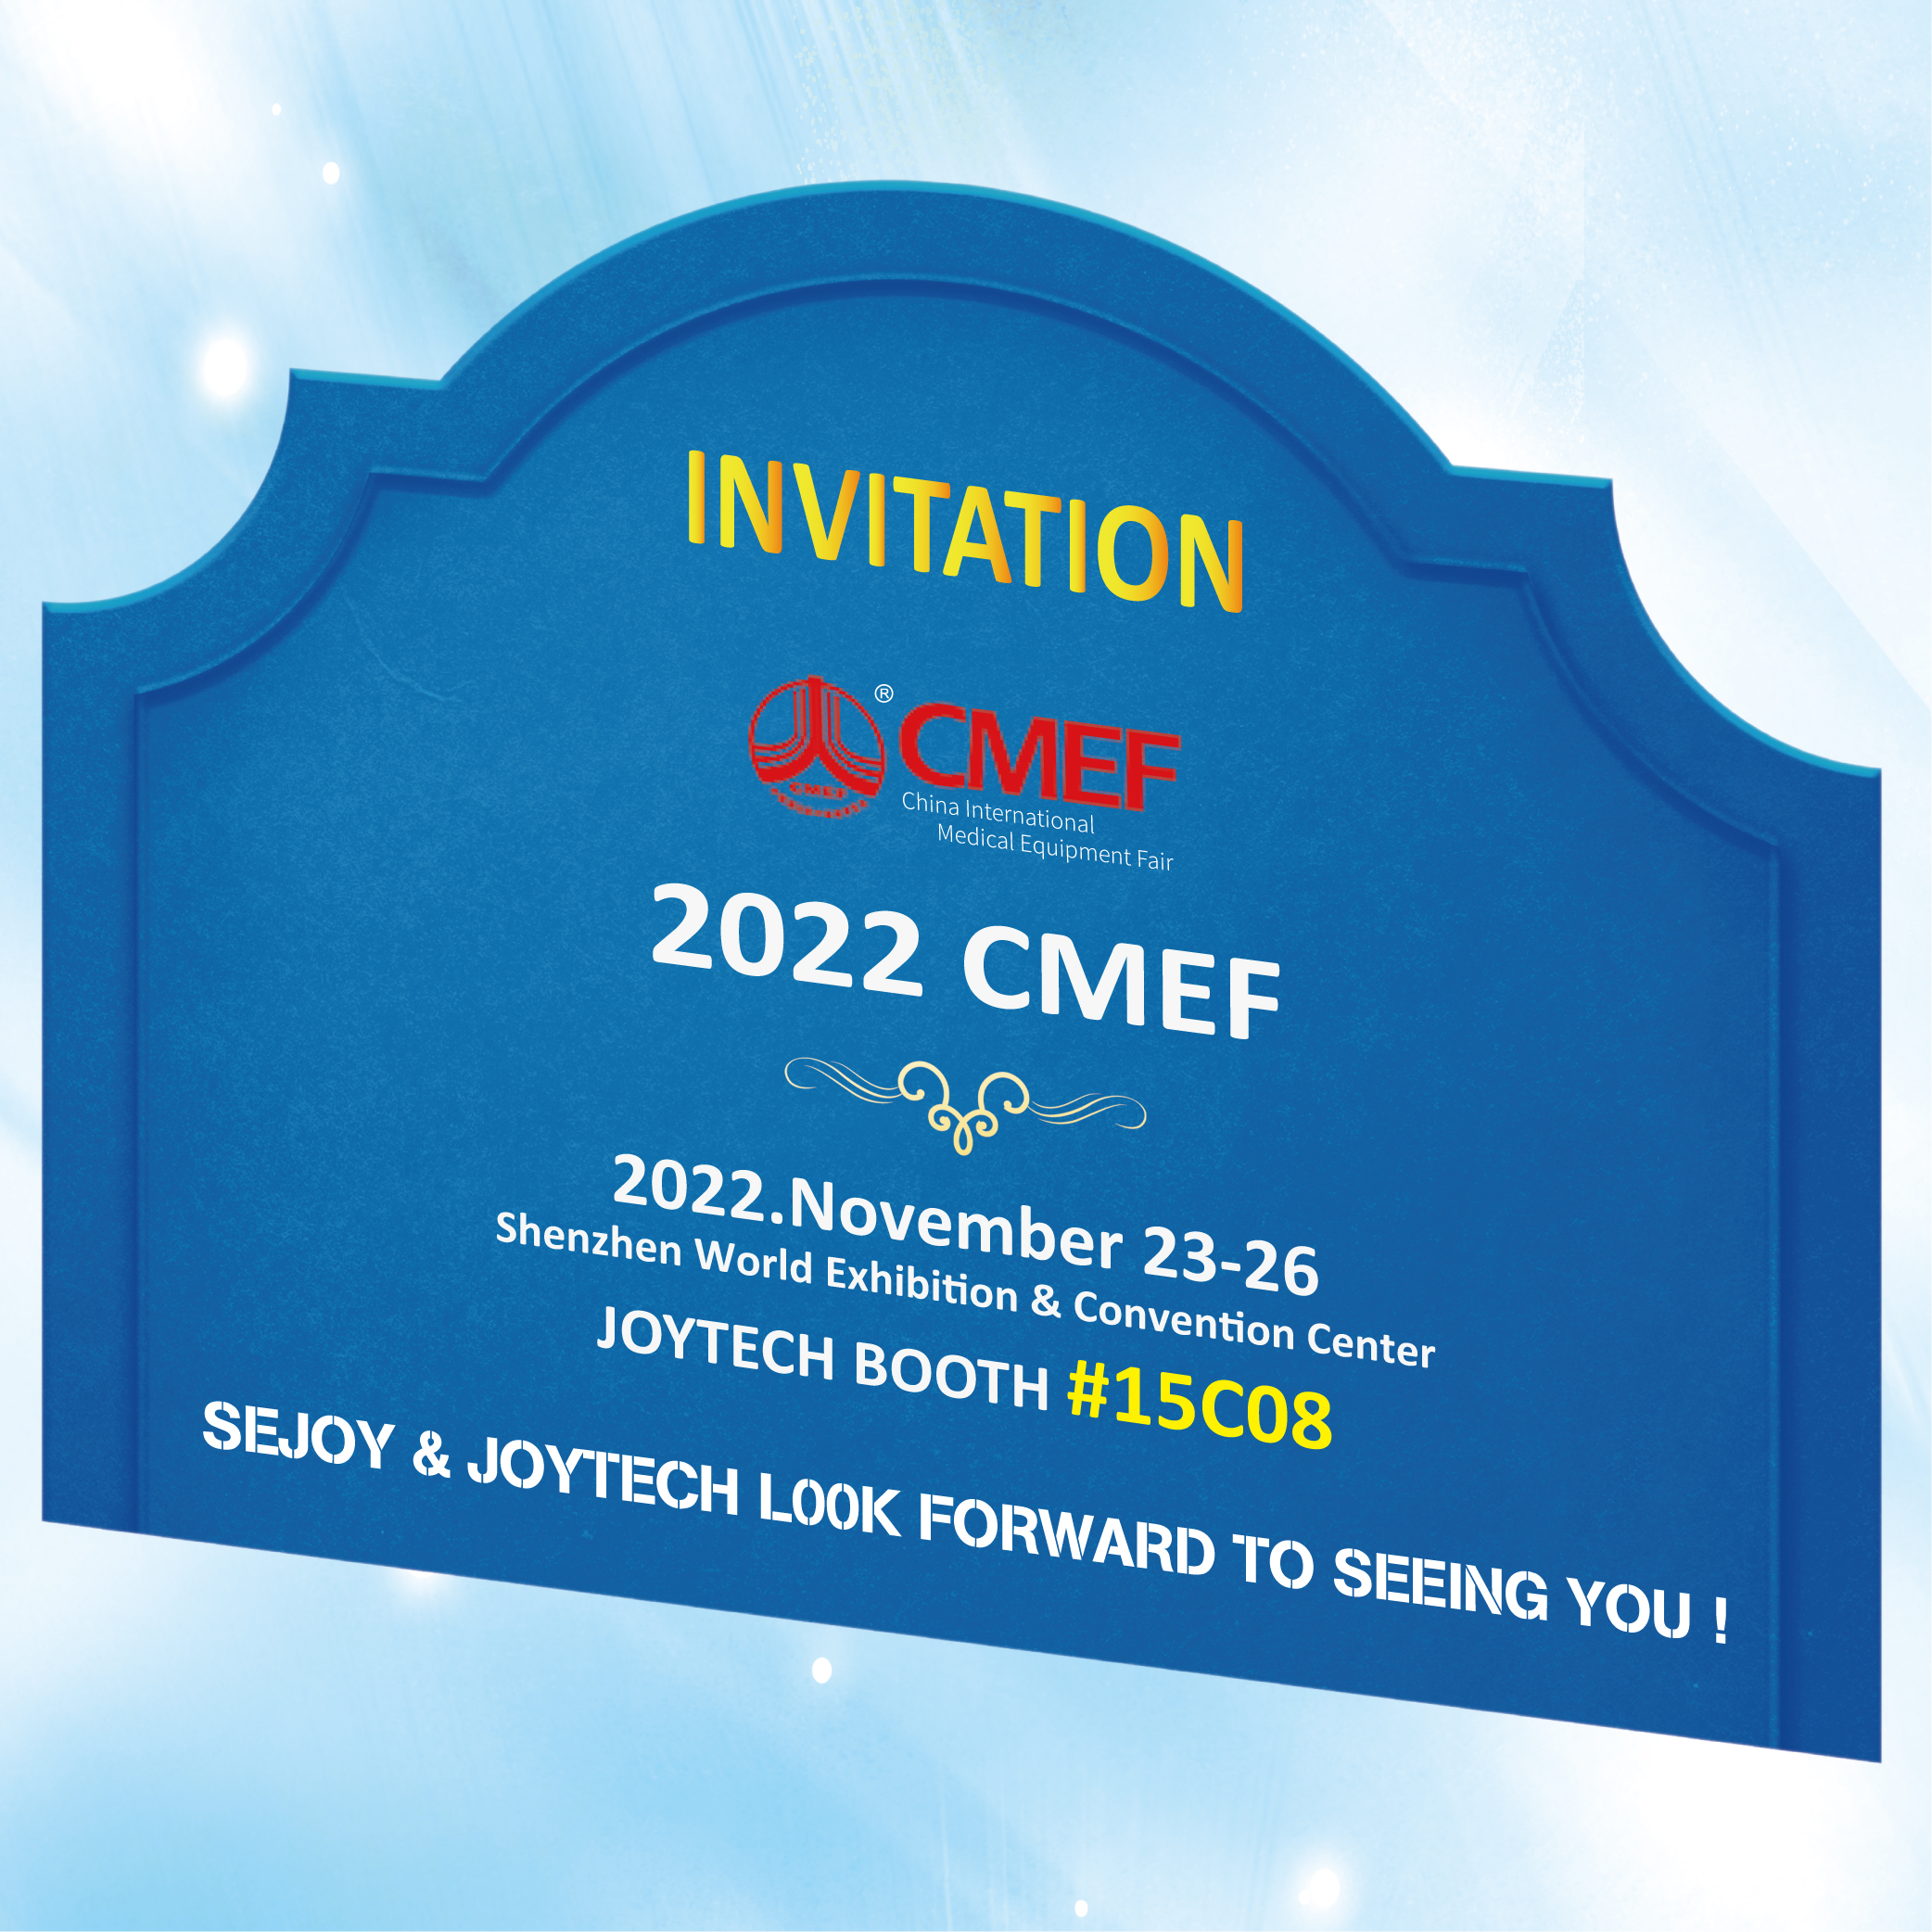 Sugeng rawuh ing Joytech Booth ing CMEF 2022